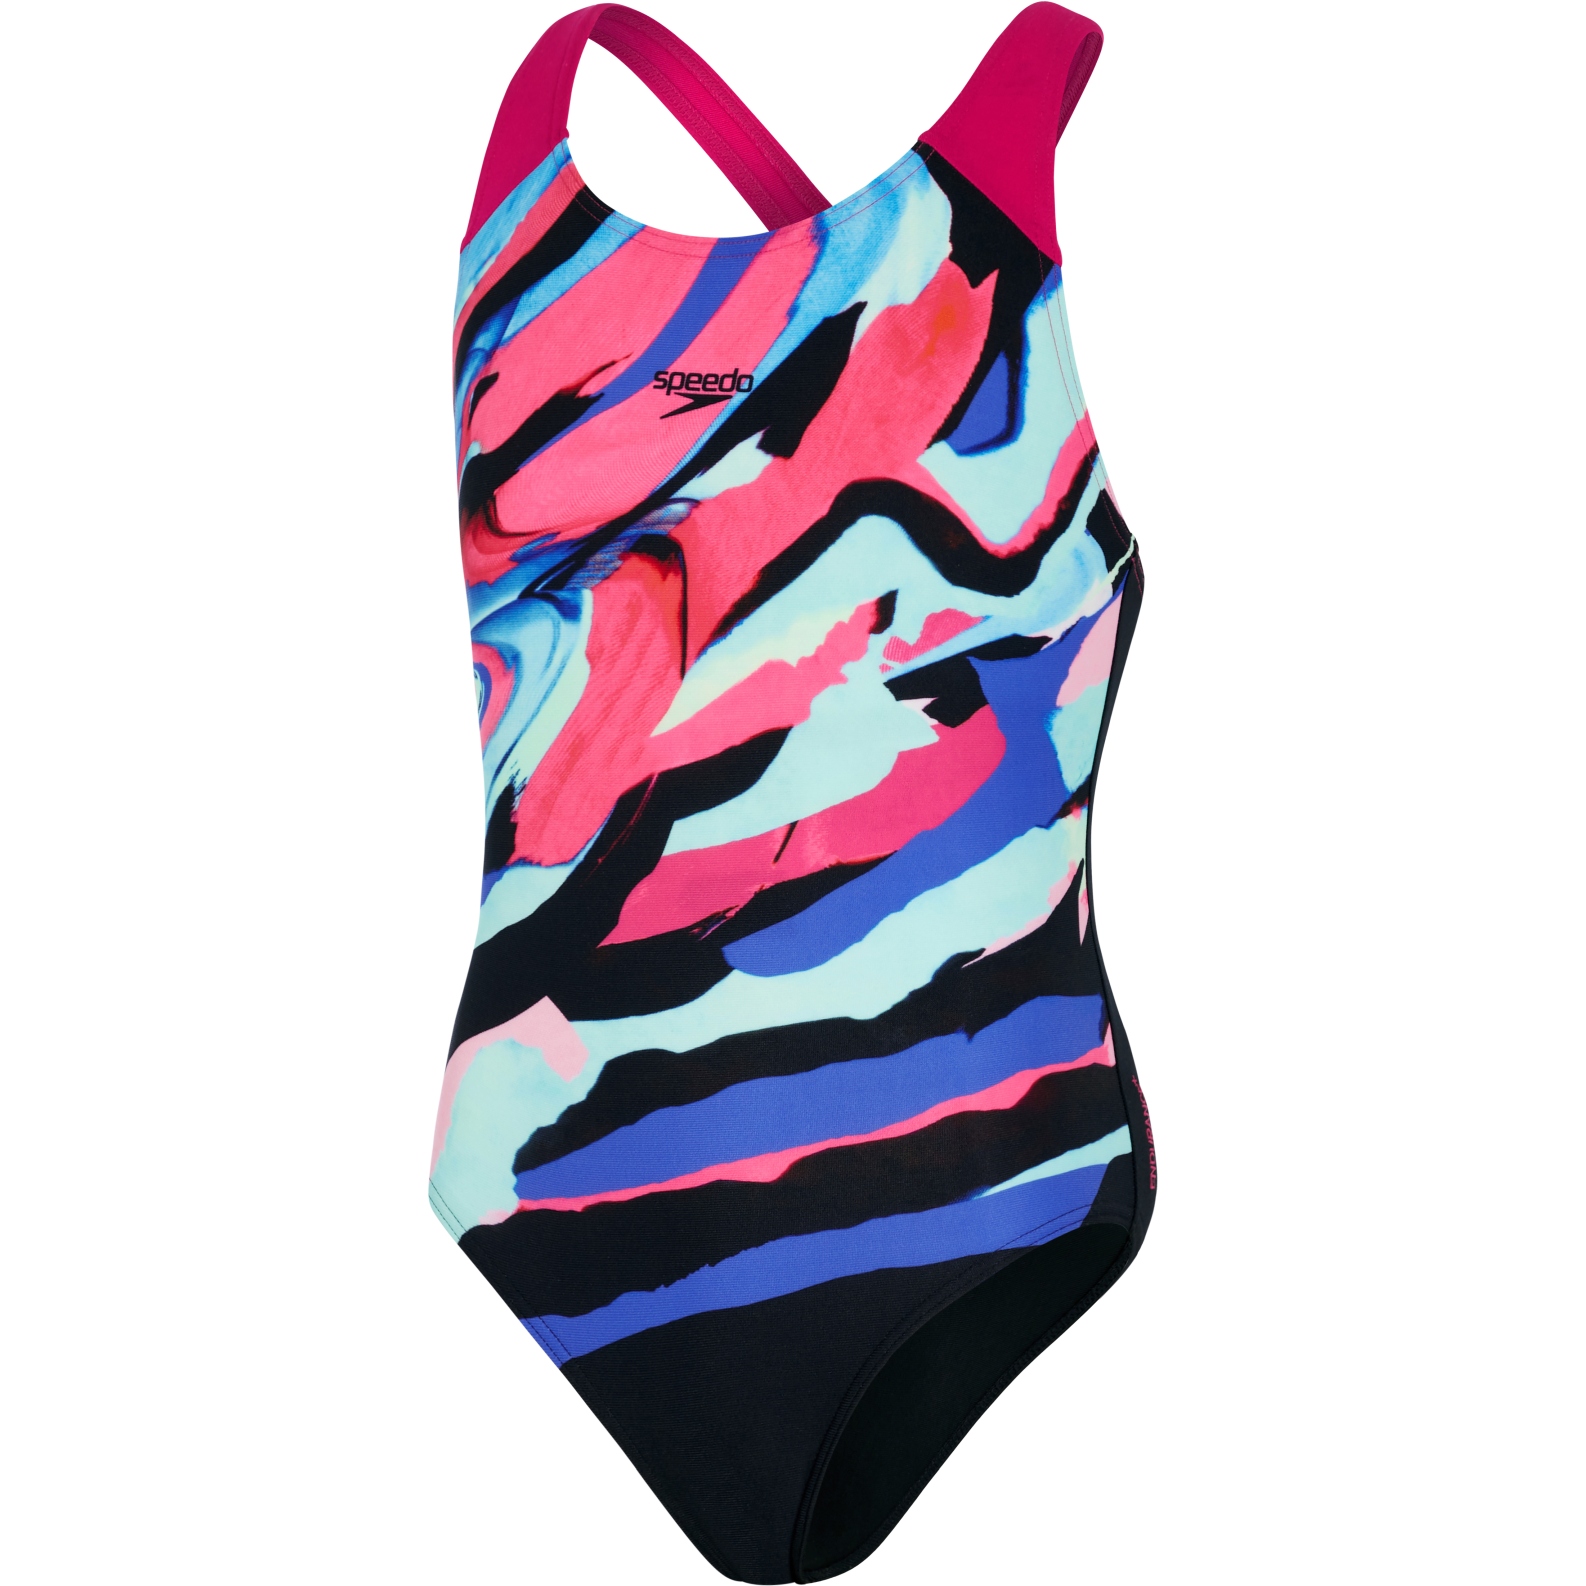 Bild von Speedo Digital Placement Splashback Mädchen Badeanzug - black/electric pink/pool/blue flame